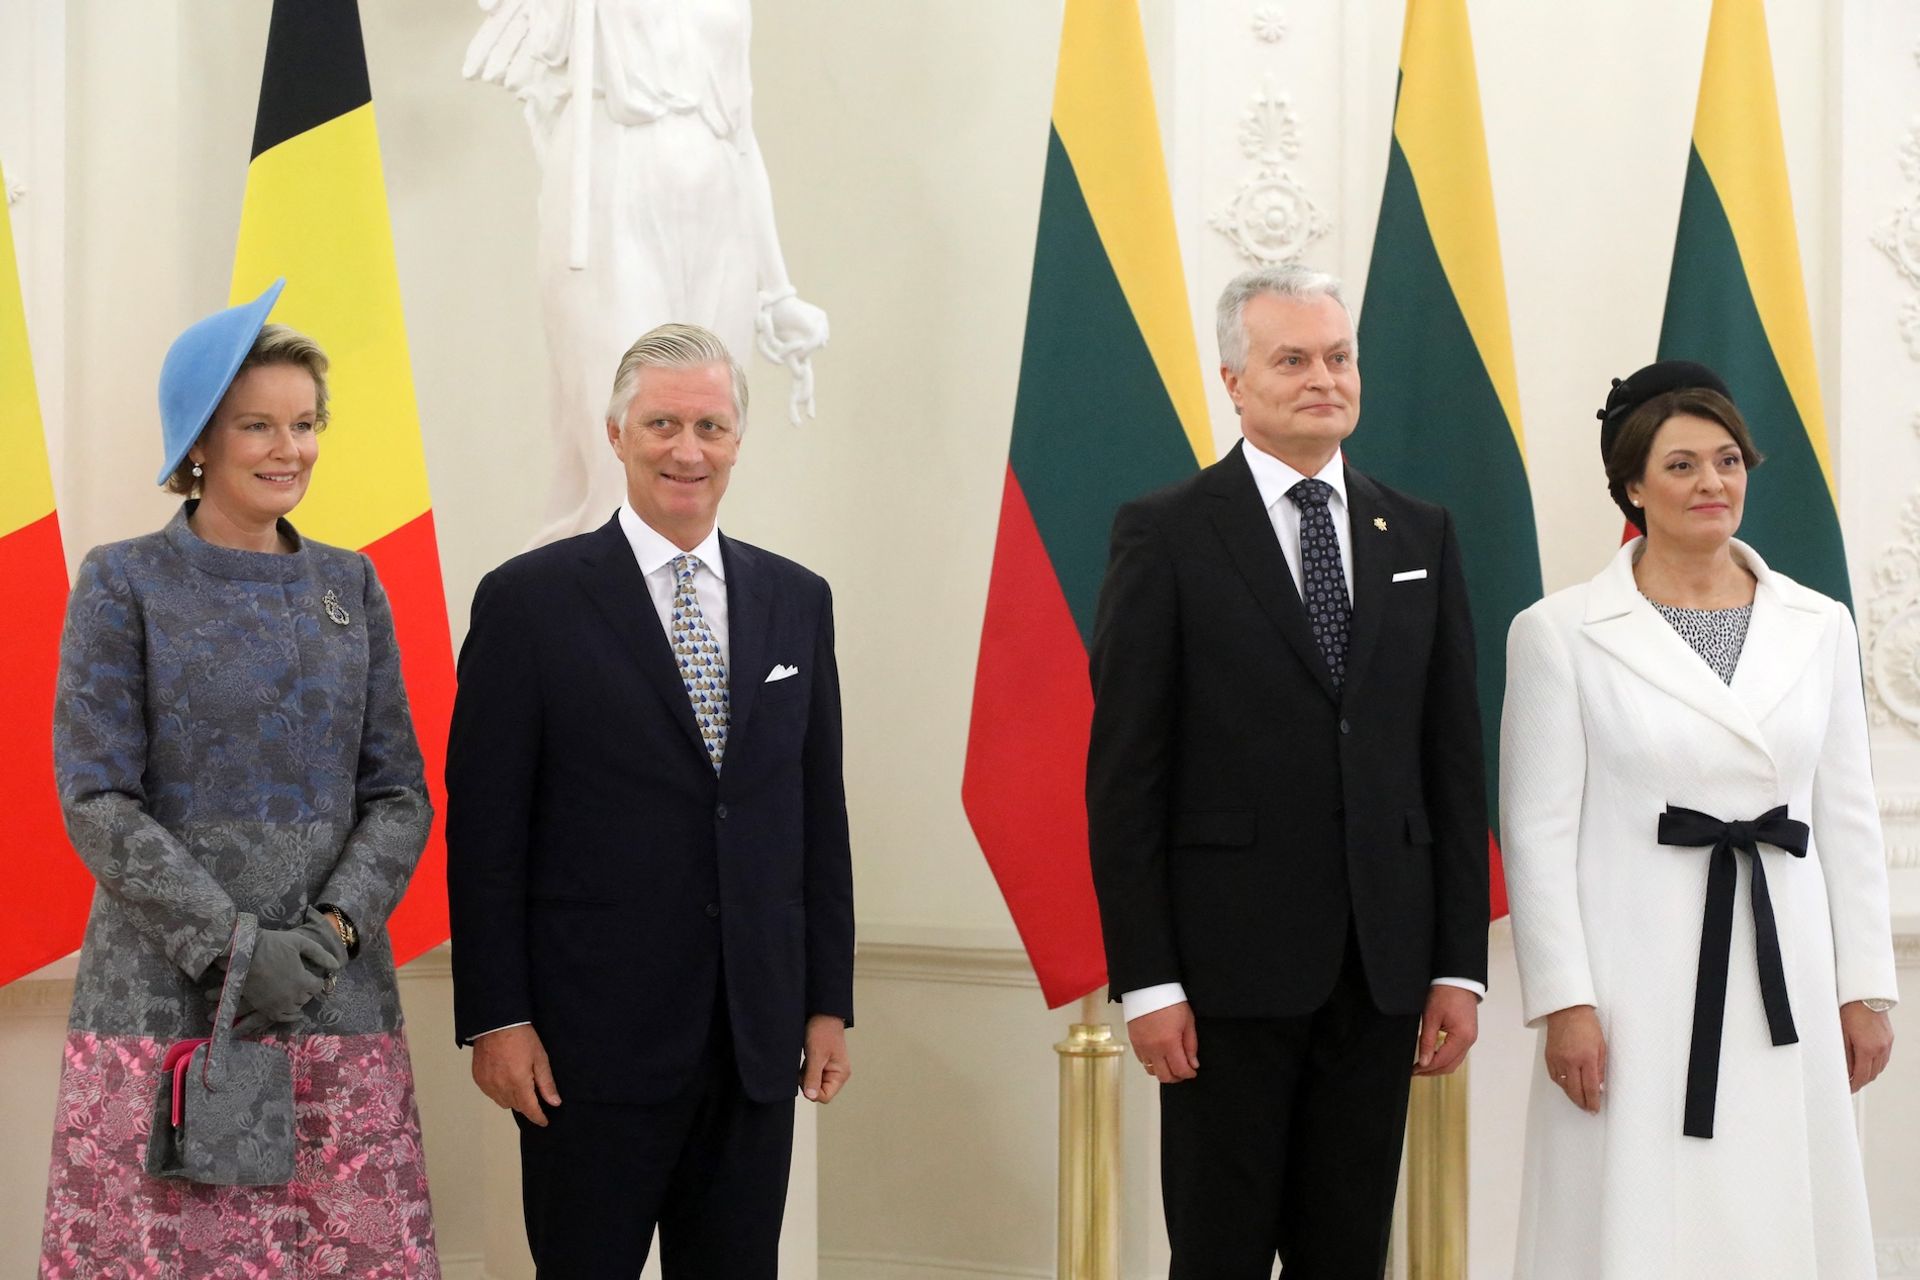 Koningspaar-Belgie-presidentspaar-Litouwen